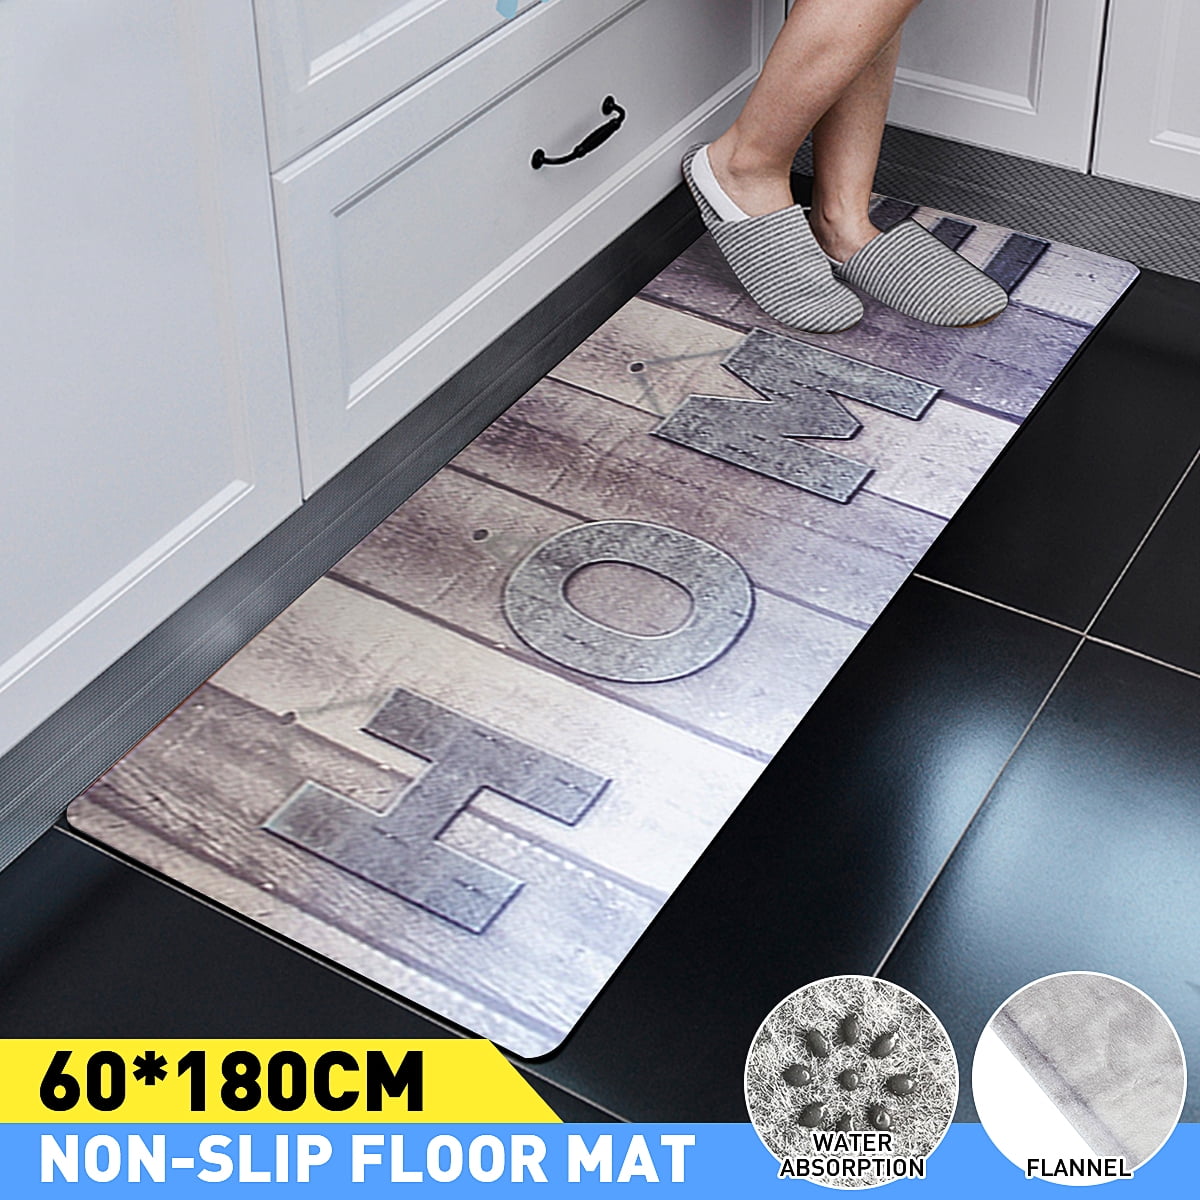 24x16" Valentine's Love You Bathroom Carpet Doormat Bath Mat Kitchen Floor Rug 